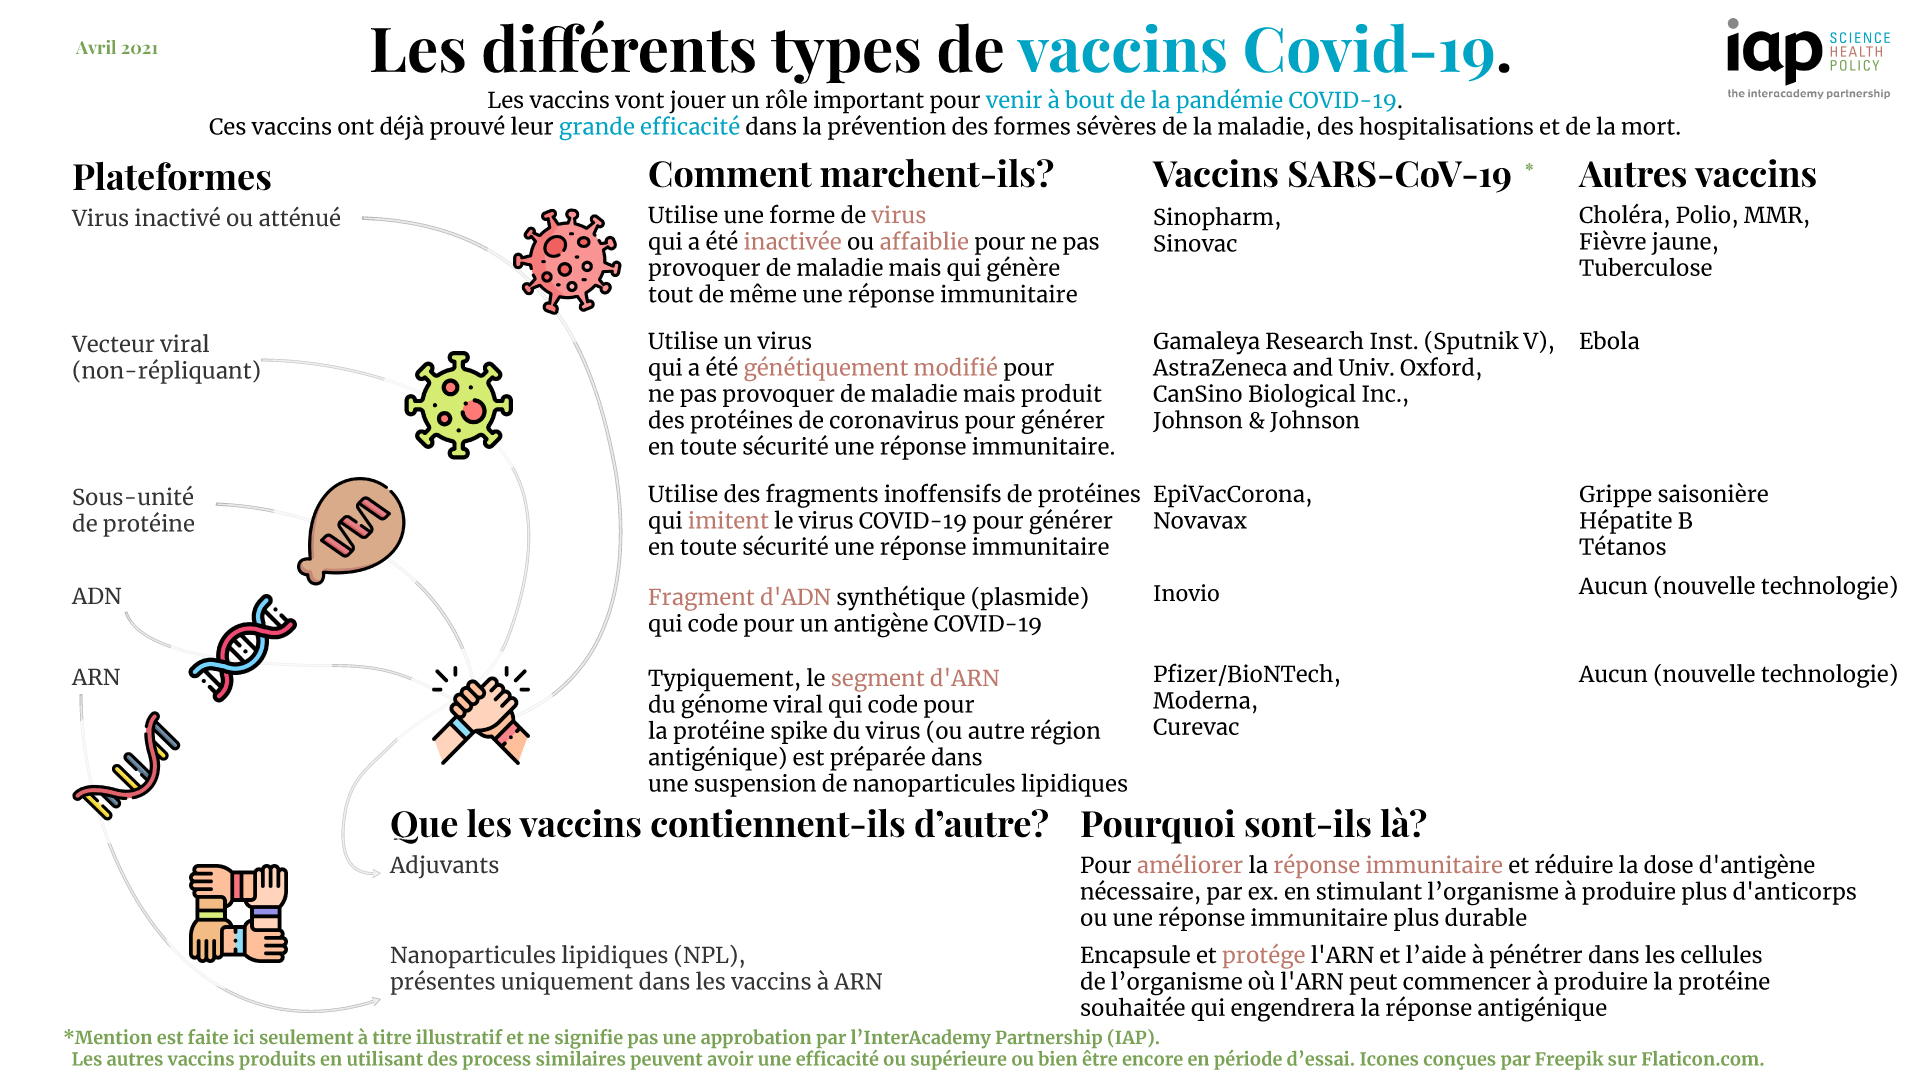 Les différents types de vaccins COVID-19